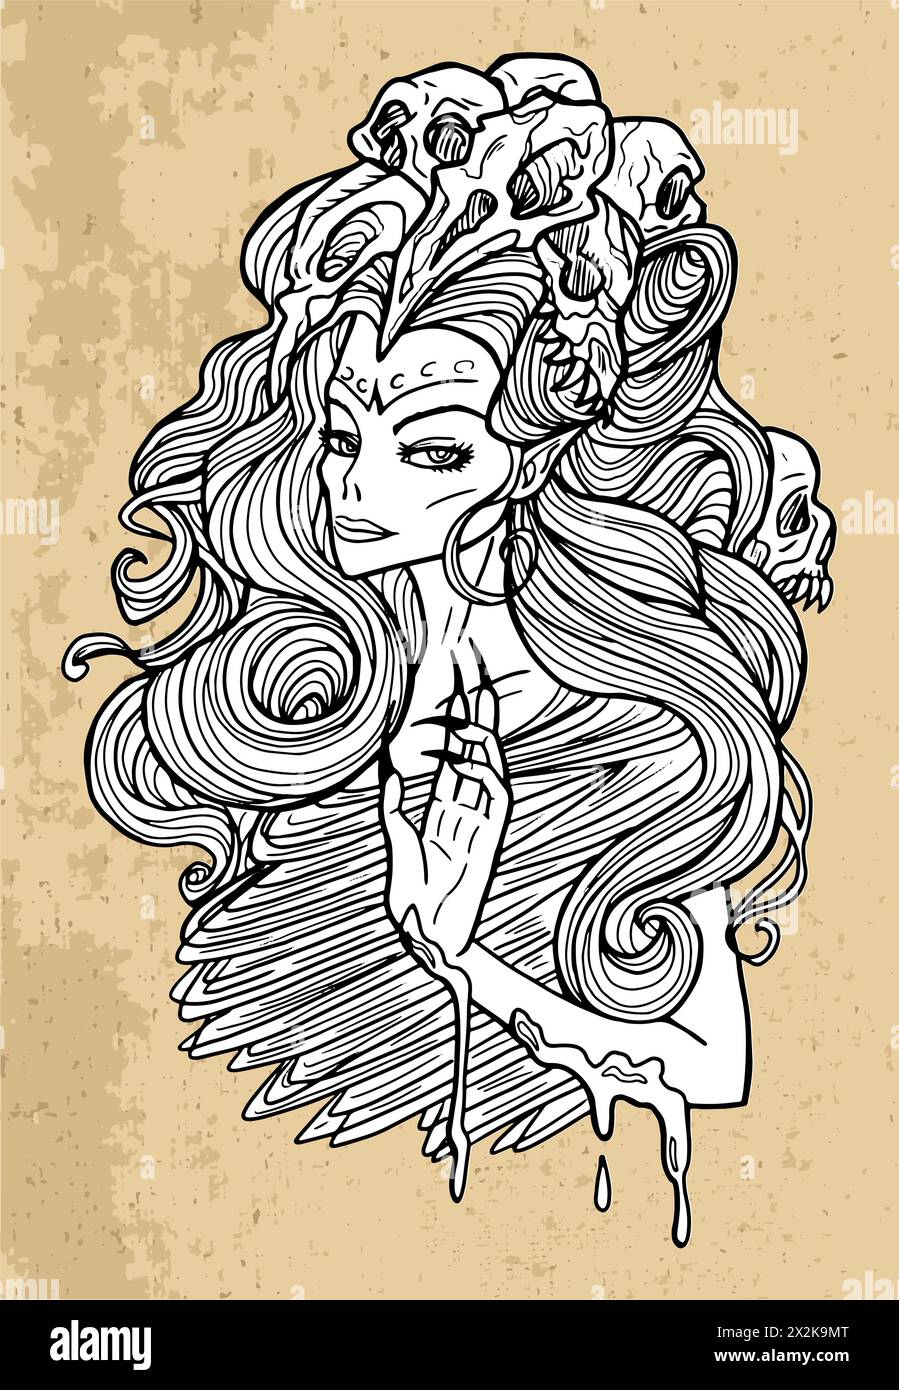 Schaurige Illustration mit einer schönen Frau als Dämon mit Schädeln im Haar. Esoterische, mystische und gotische Konzepte, Halloween-Hintergrund, Saibling Stock Vektor